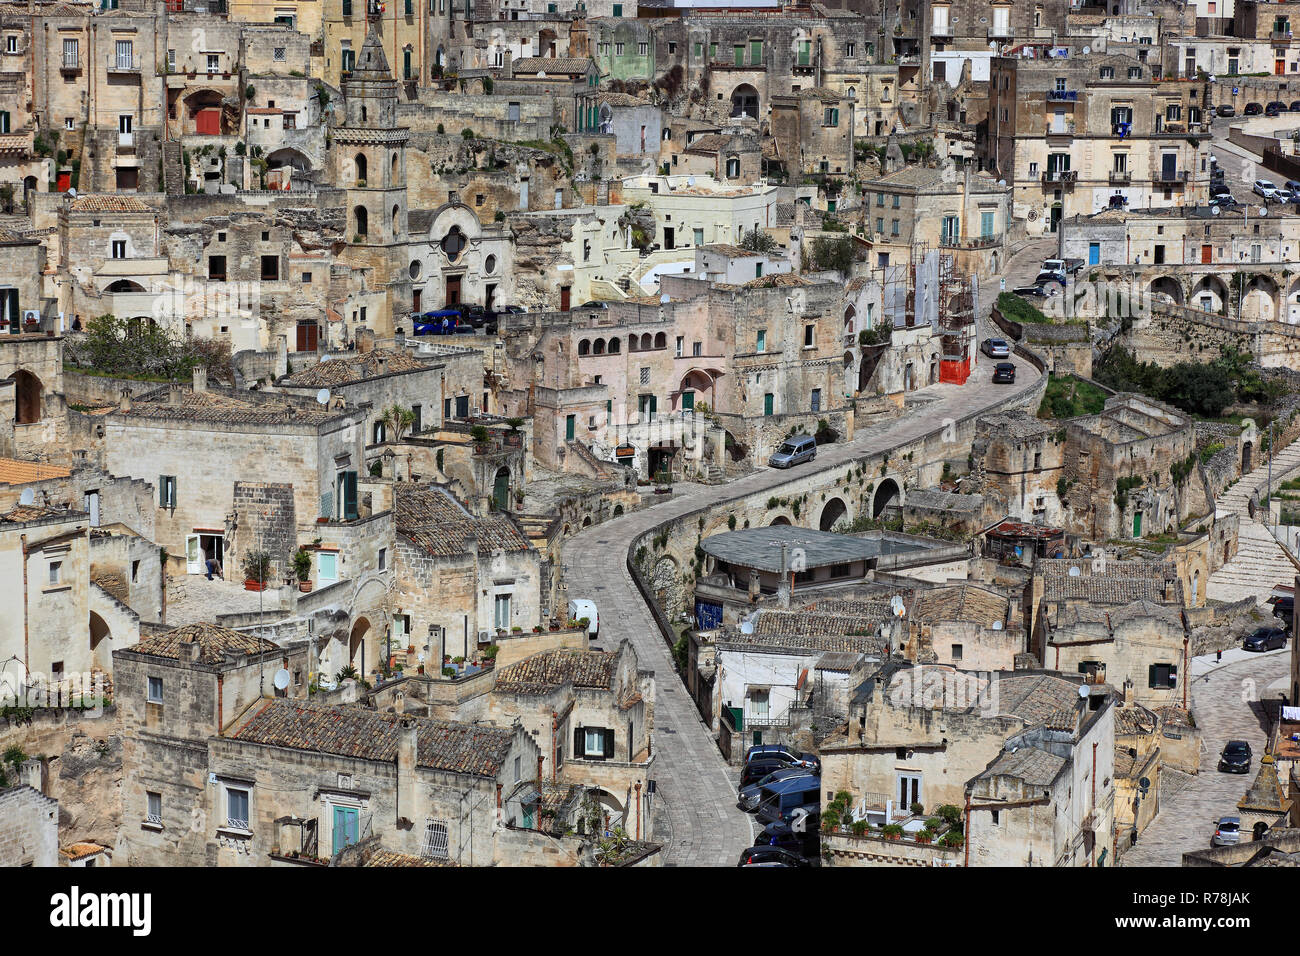 Historic centre, Sassi di Matera cave dwellings, Unesco World Heritage Site, Matera, Basilicata, Italy Stock Photo